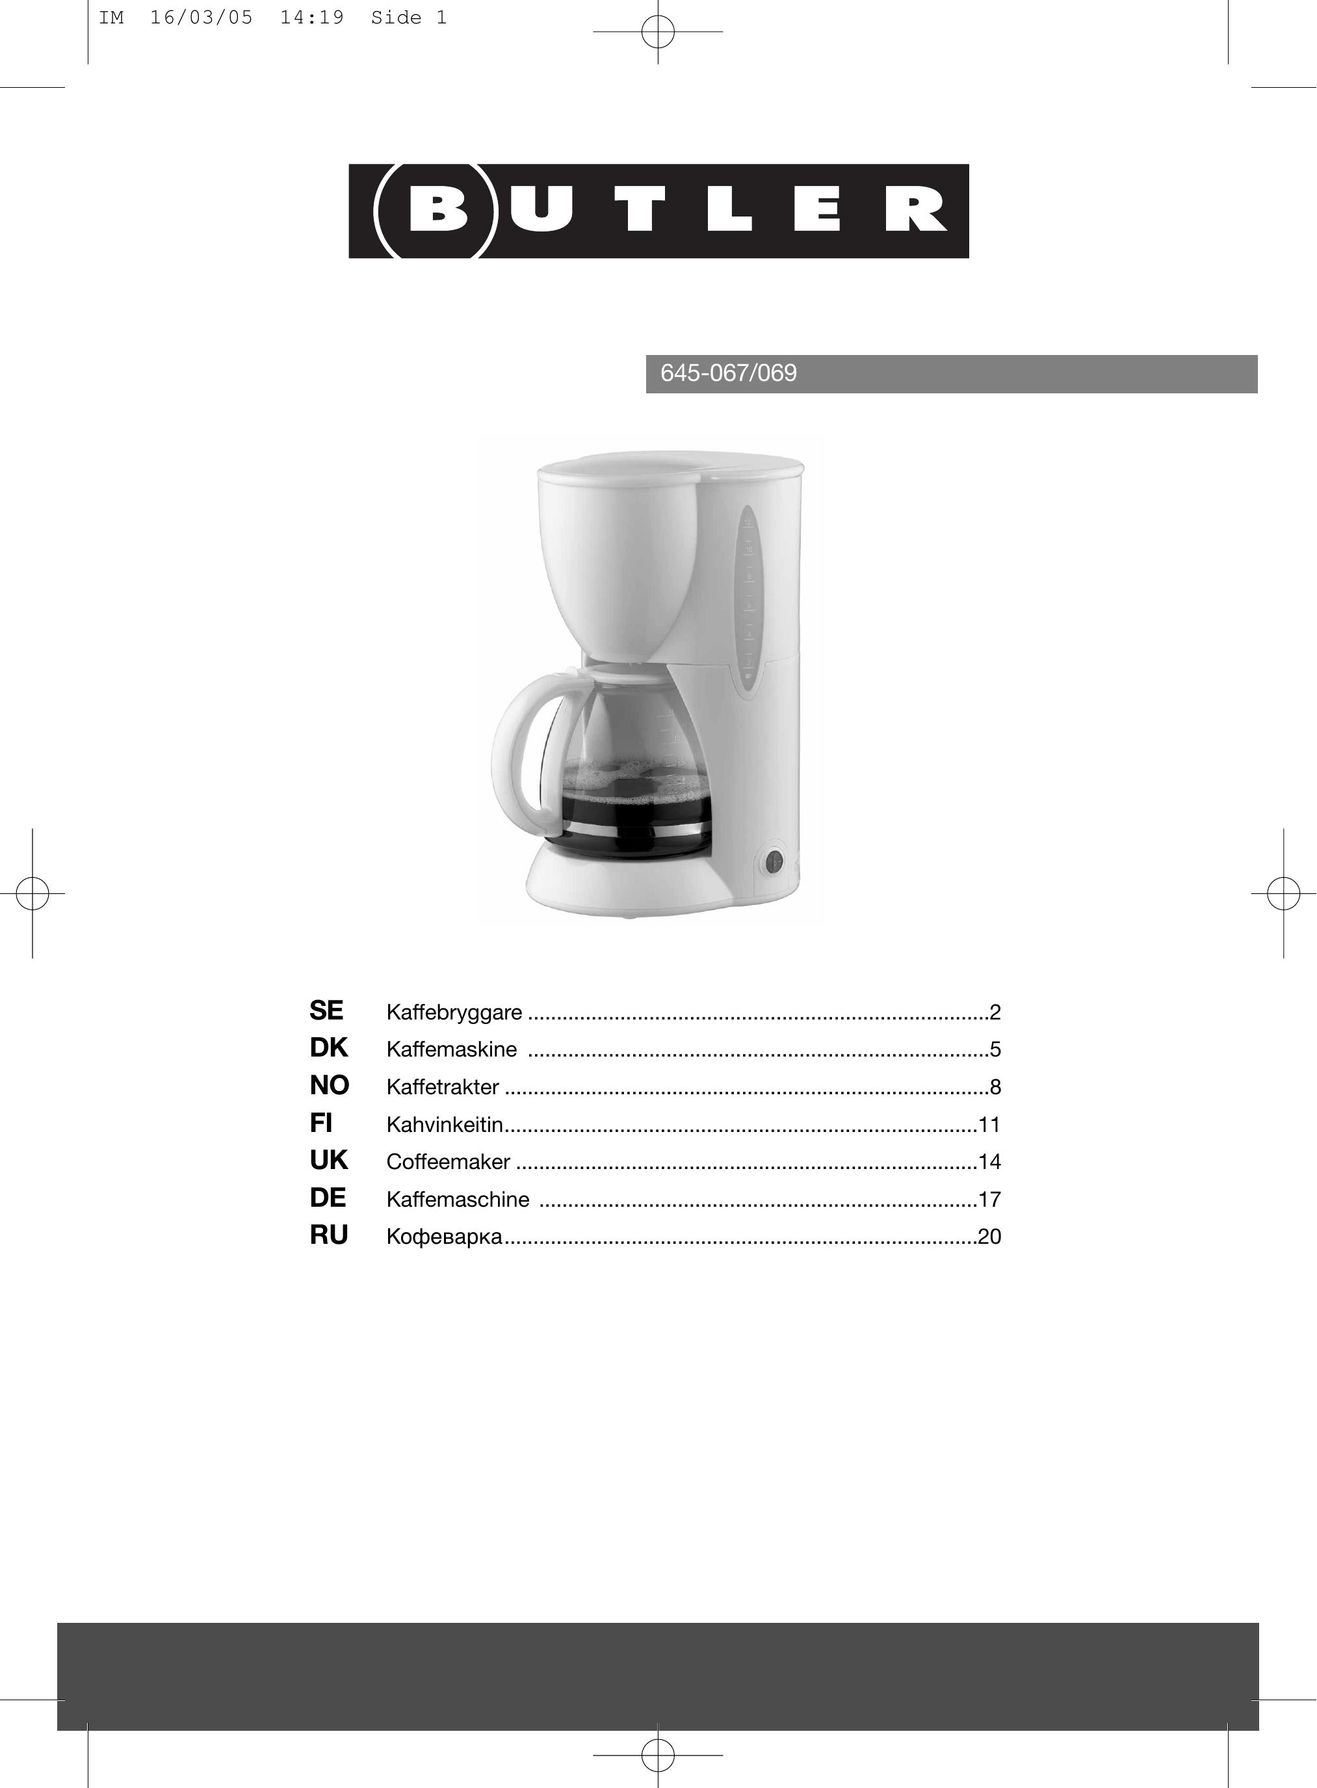 Butler 645-067 Coffeemaker User Manual